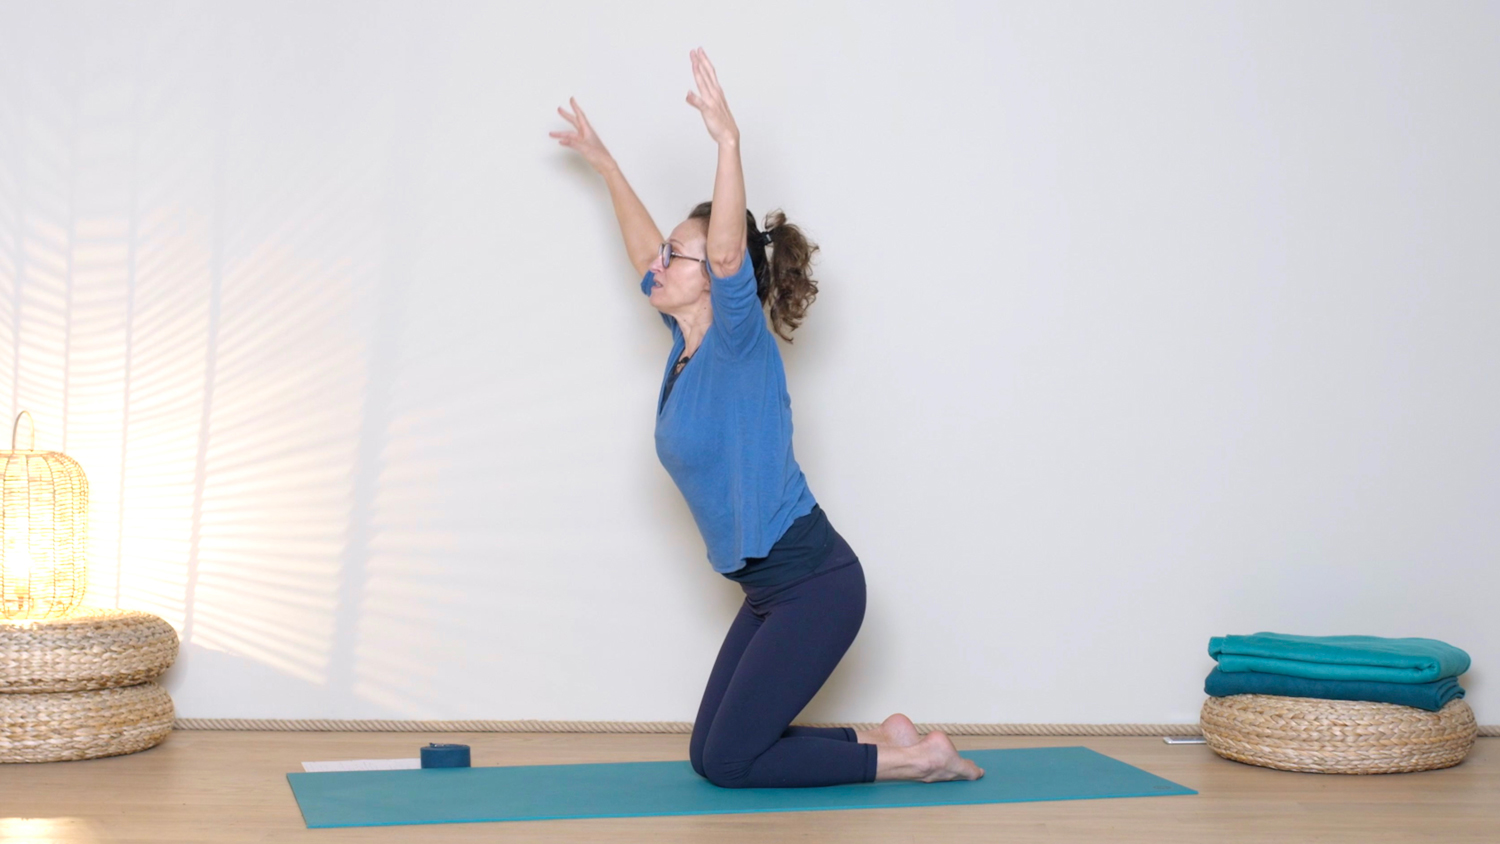 Yoga dynamique autour de l'élément Ether | Cours de yoga en ligne avec Delphine Denis | Hatha Yoga dynamique